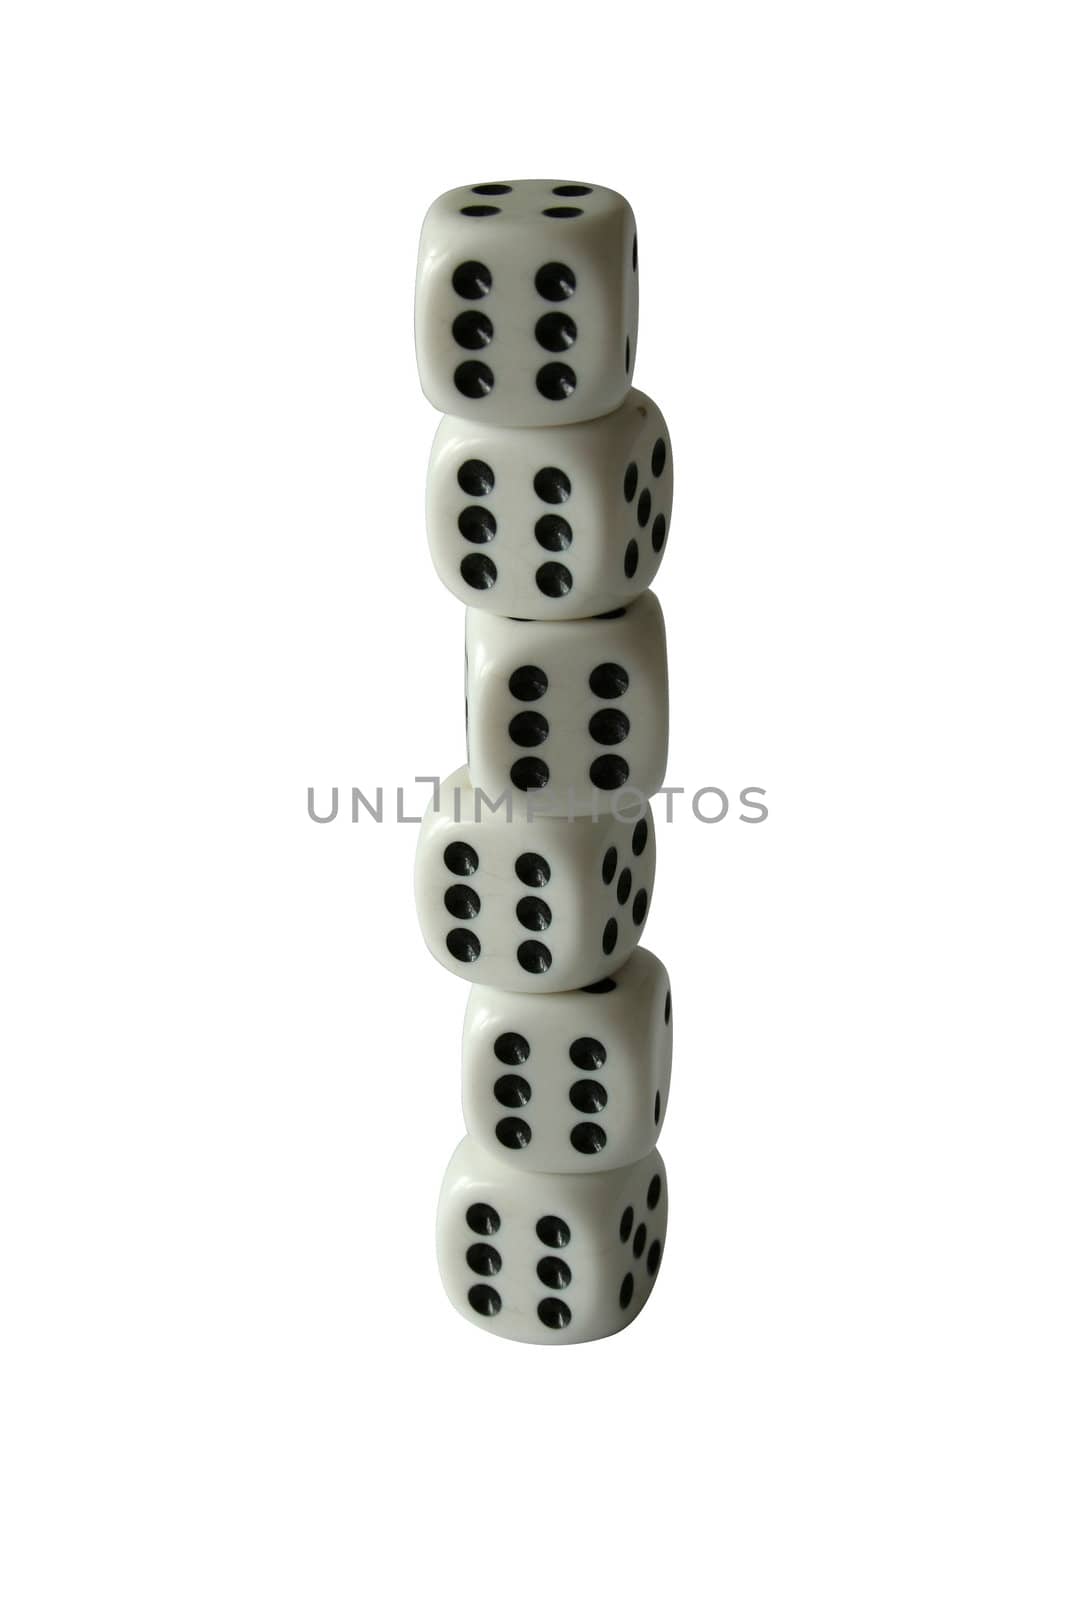 six dices by furzyk73